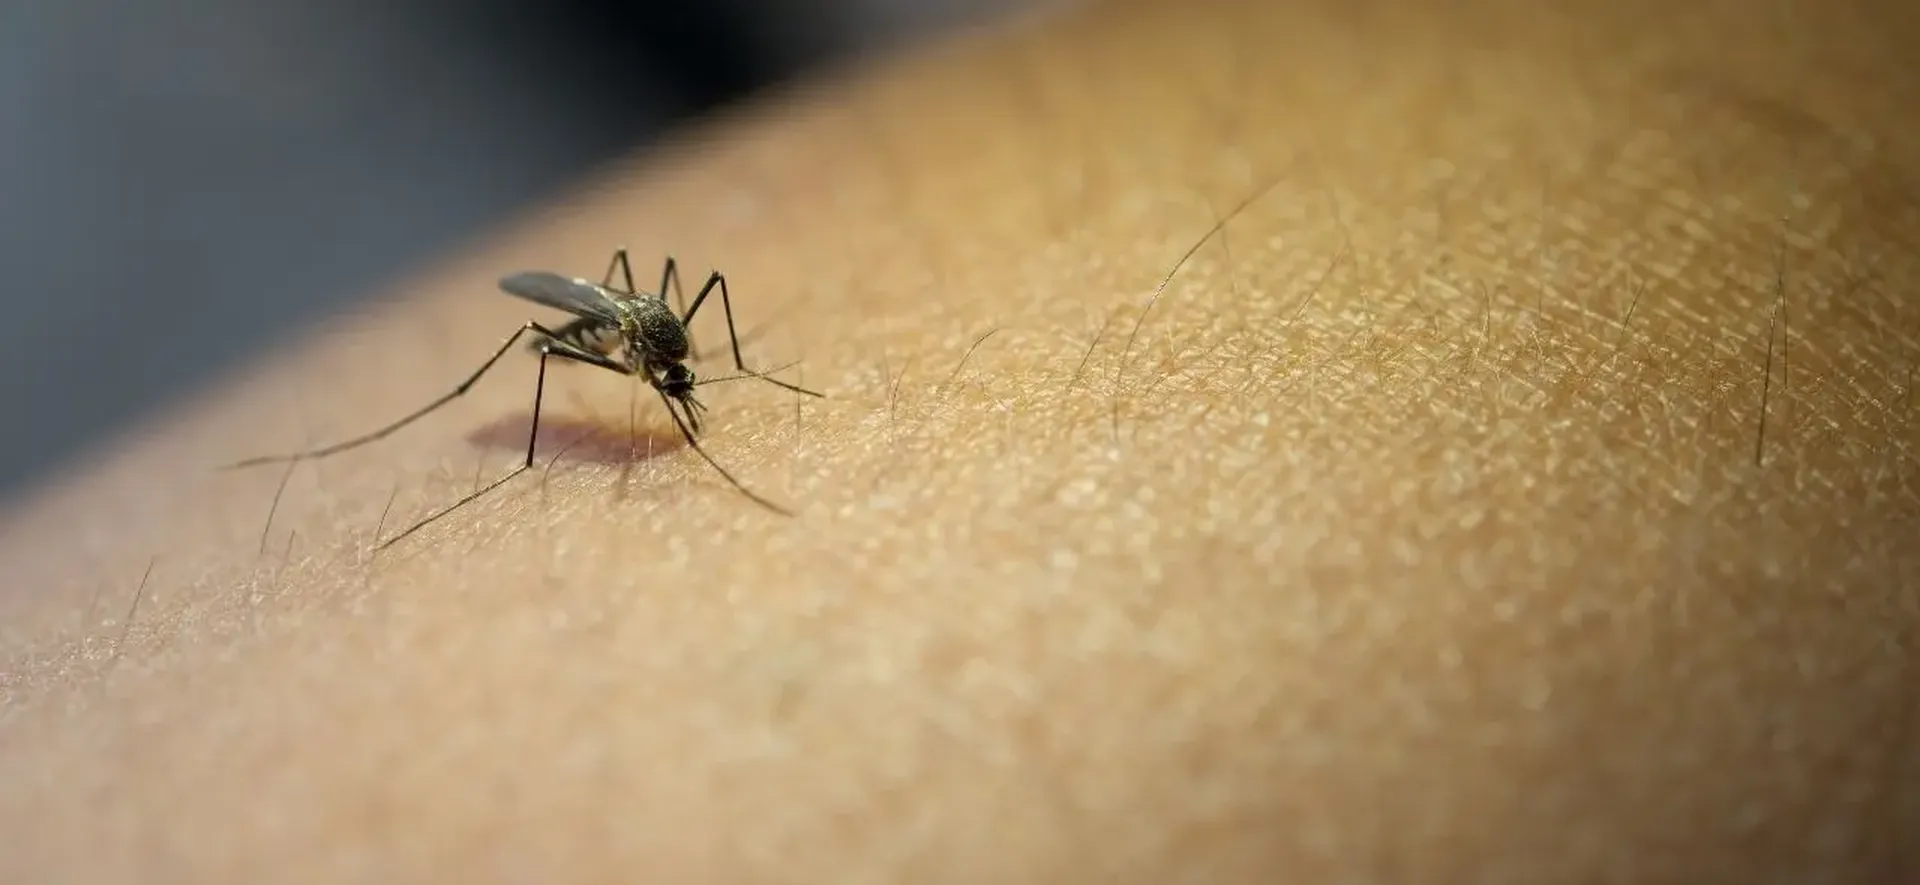 42% dos criadouros do mosquito da dengue estão em depósitos de água para consumo humano